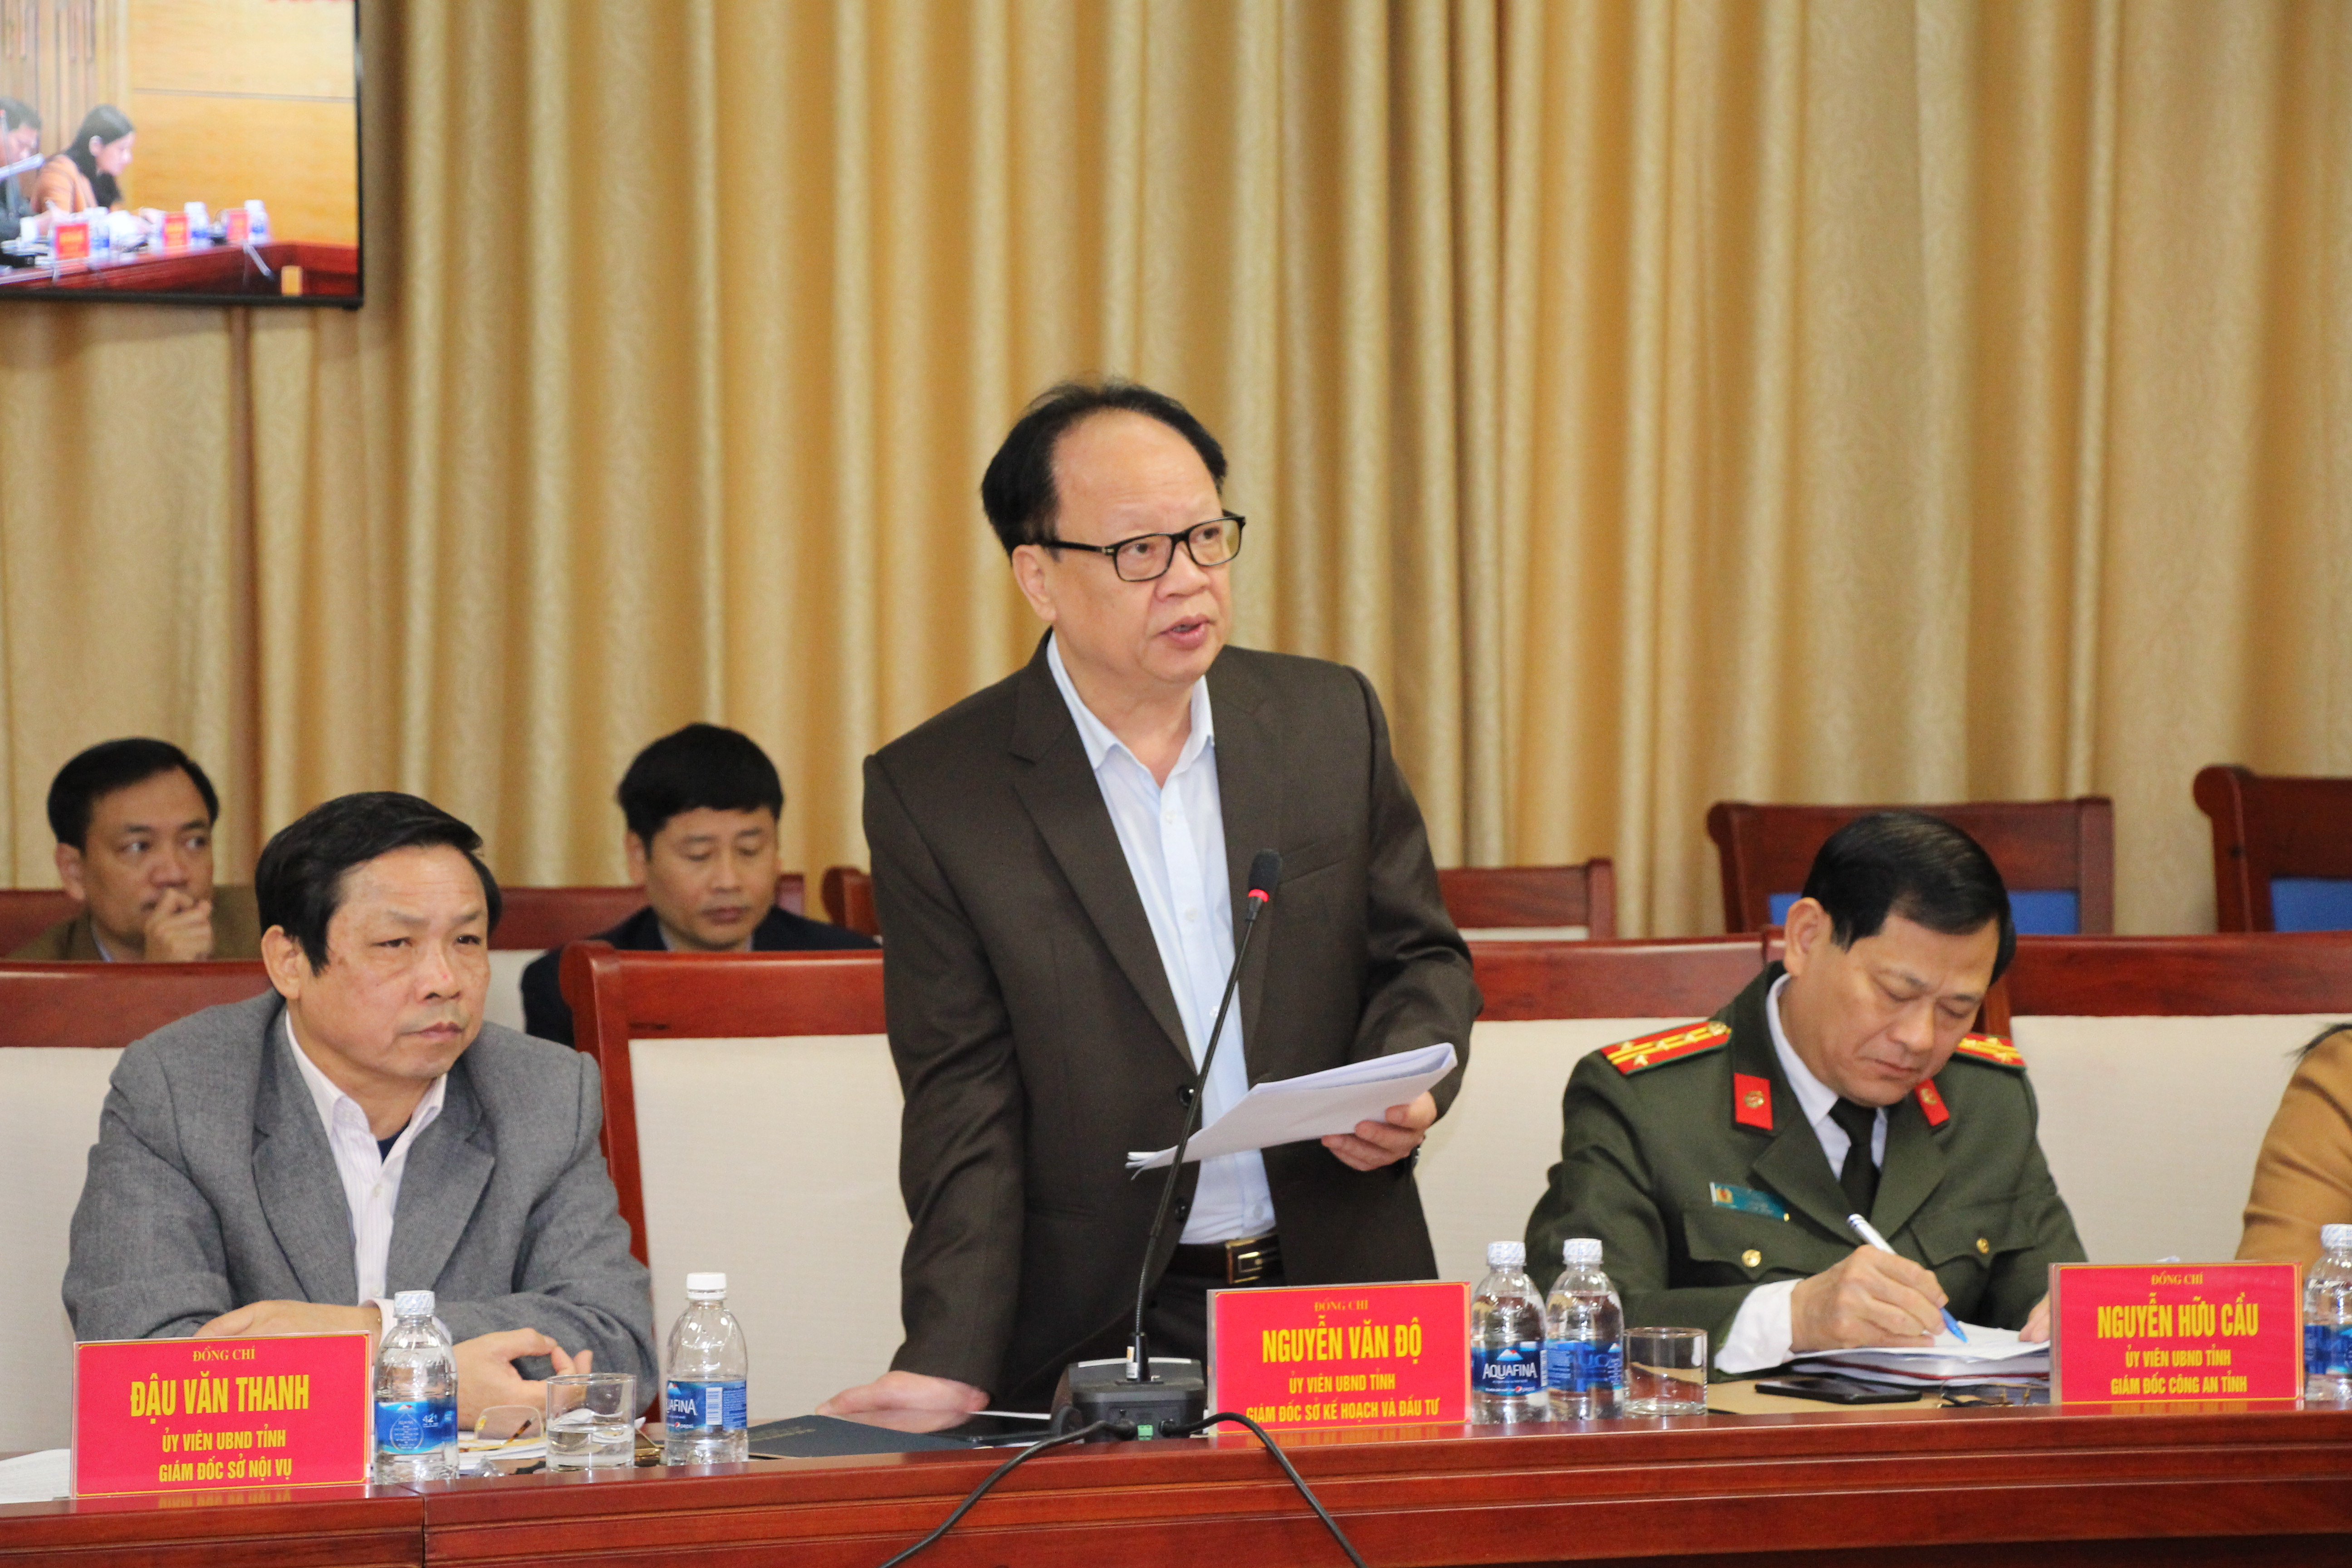 Đồng chí Nguyễn Văn Độ - Giám đốc Sở KH&ĐT tỉnh báo cáo về công tác 